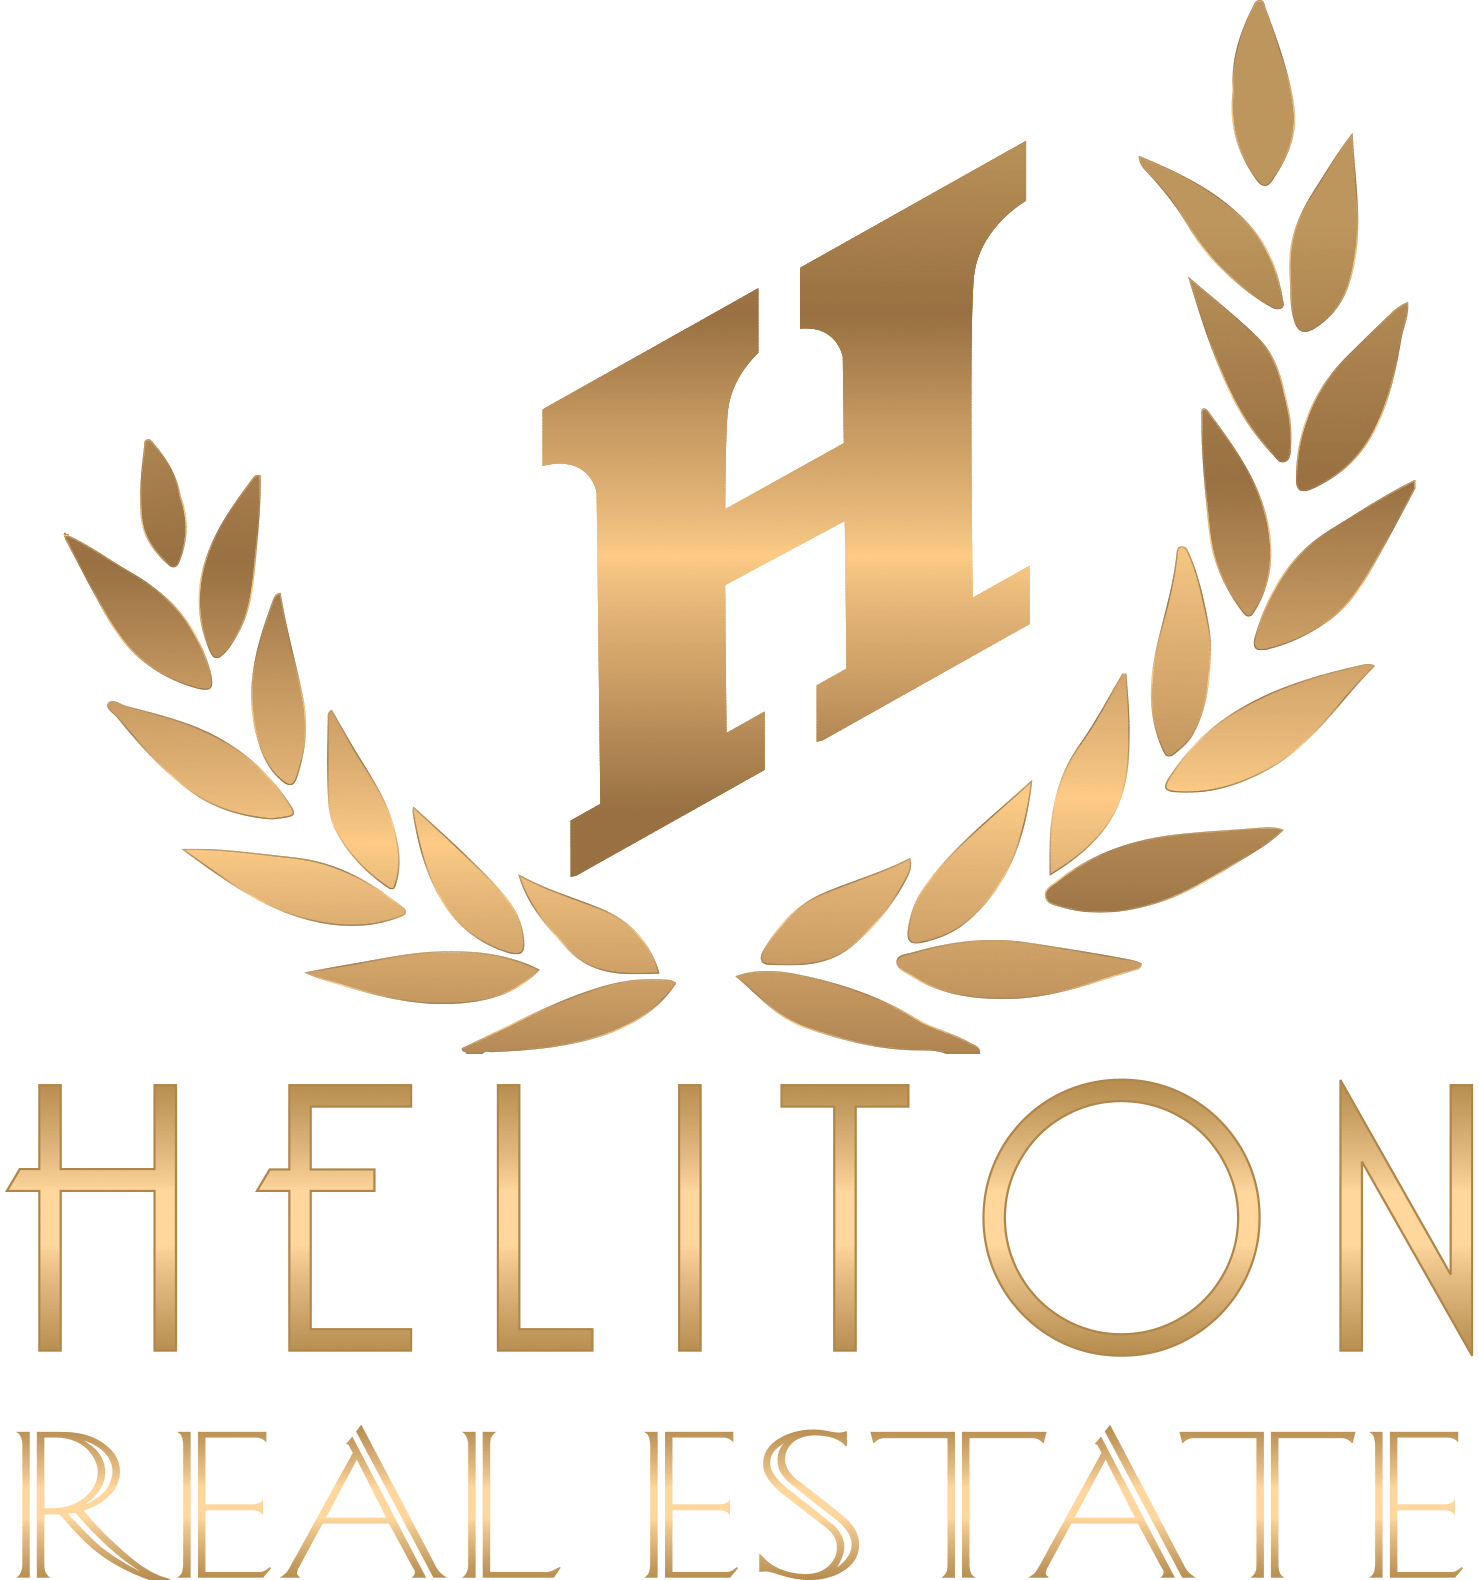 Heliton Real Estate Logo